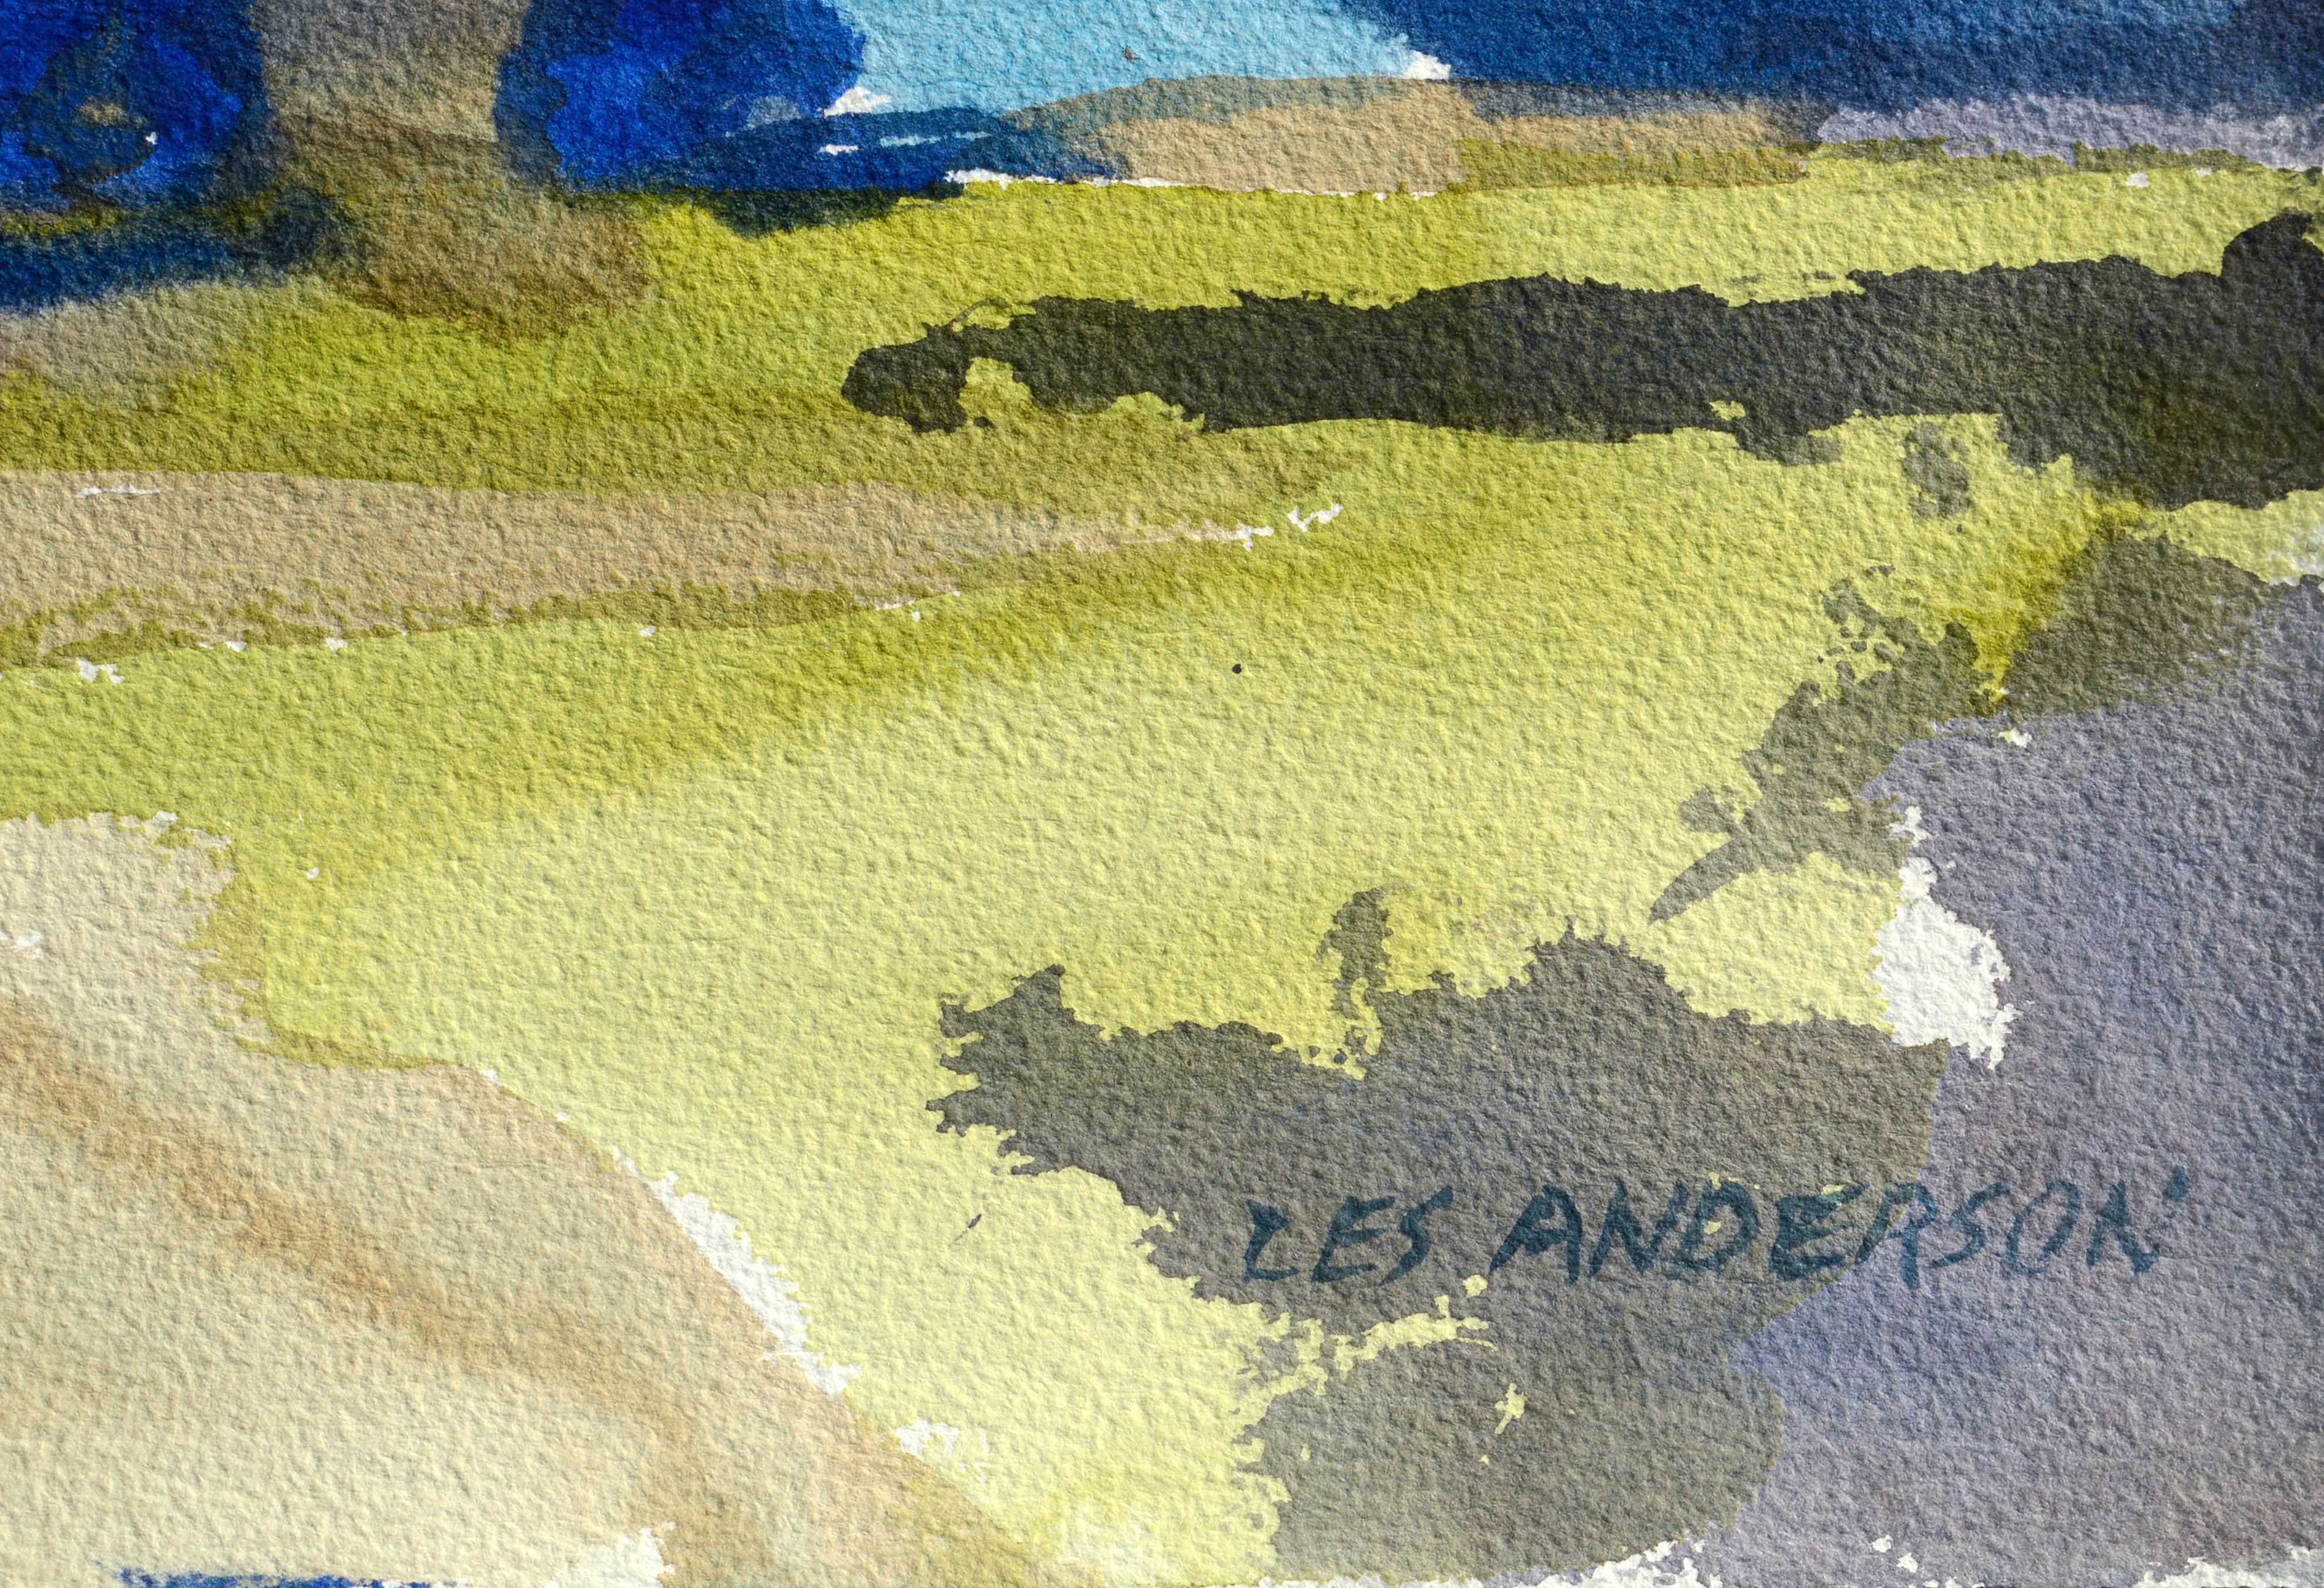 Lebendige, phantasievolle Farben wirbeln durcheinander und formen dieses skurrile, abstrahierte Landschaftsaquarell von Les Anderson (Amerikaner, 1928-2009), das eine wunderschöne Trauerweide zeigt. Signiert 